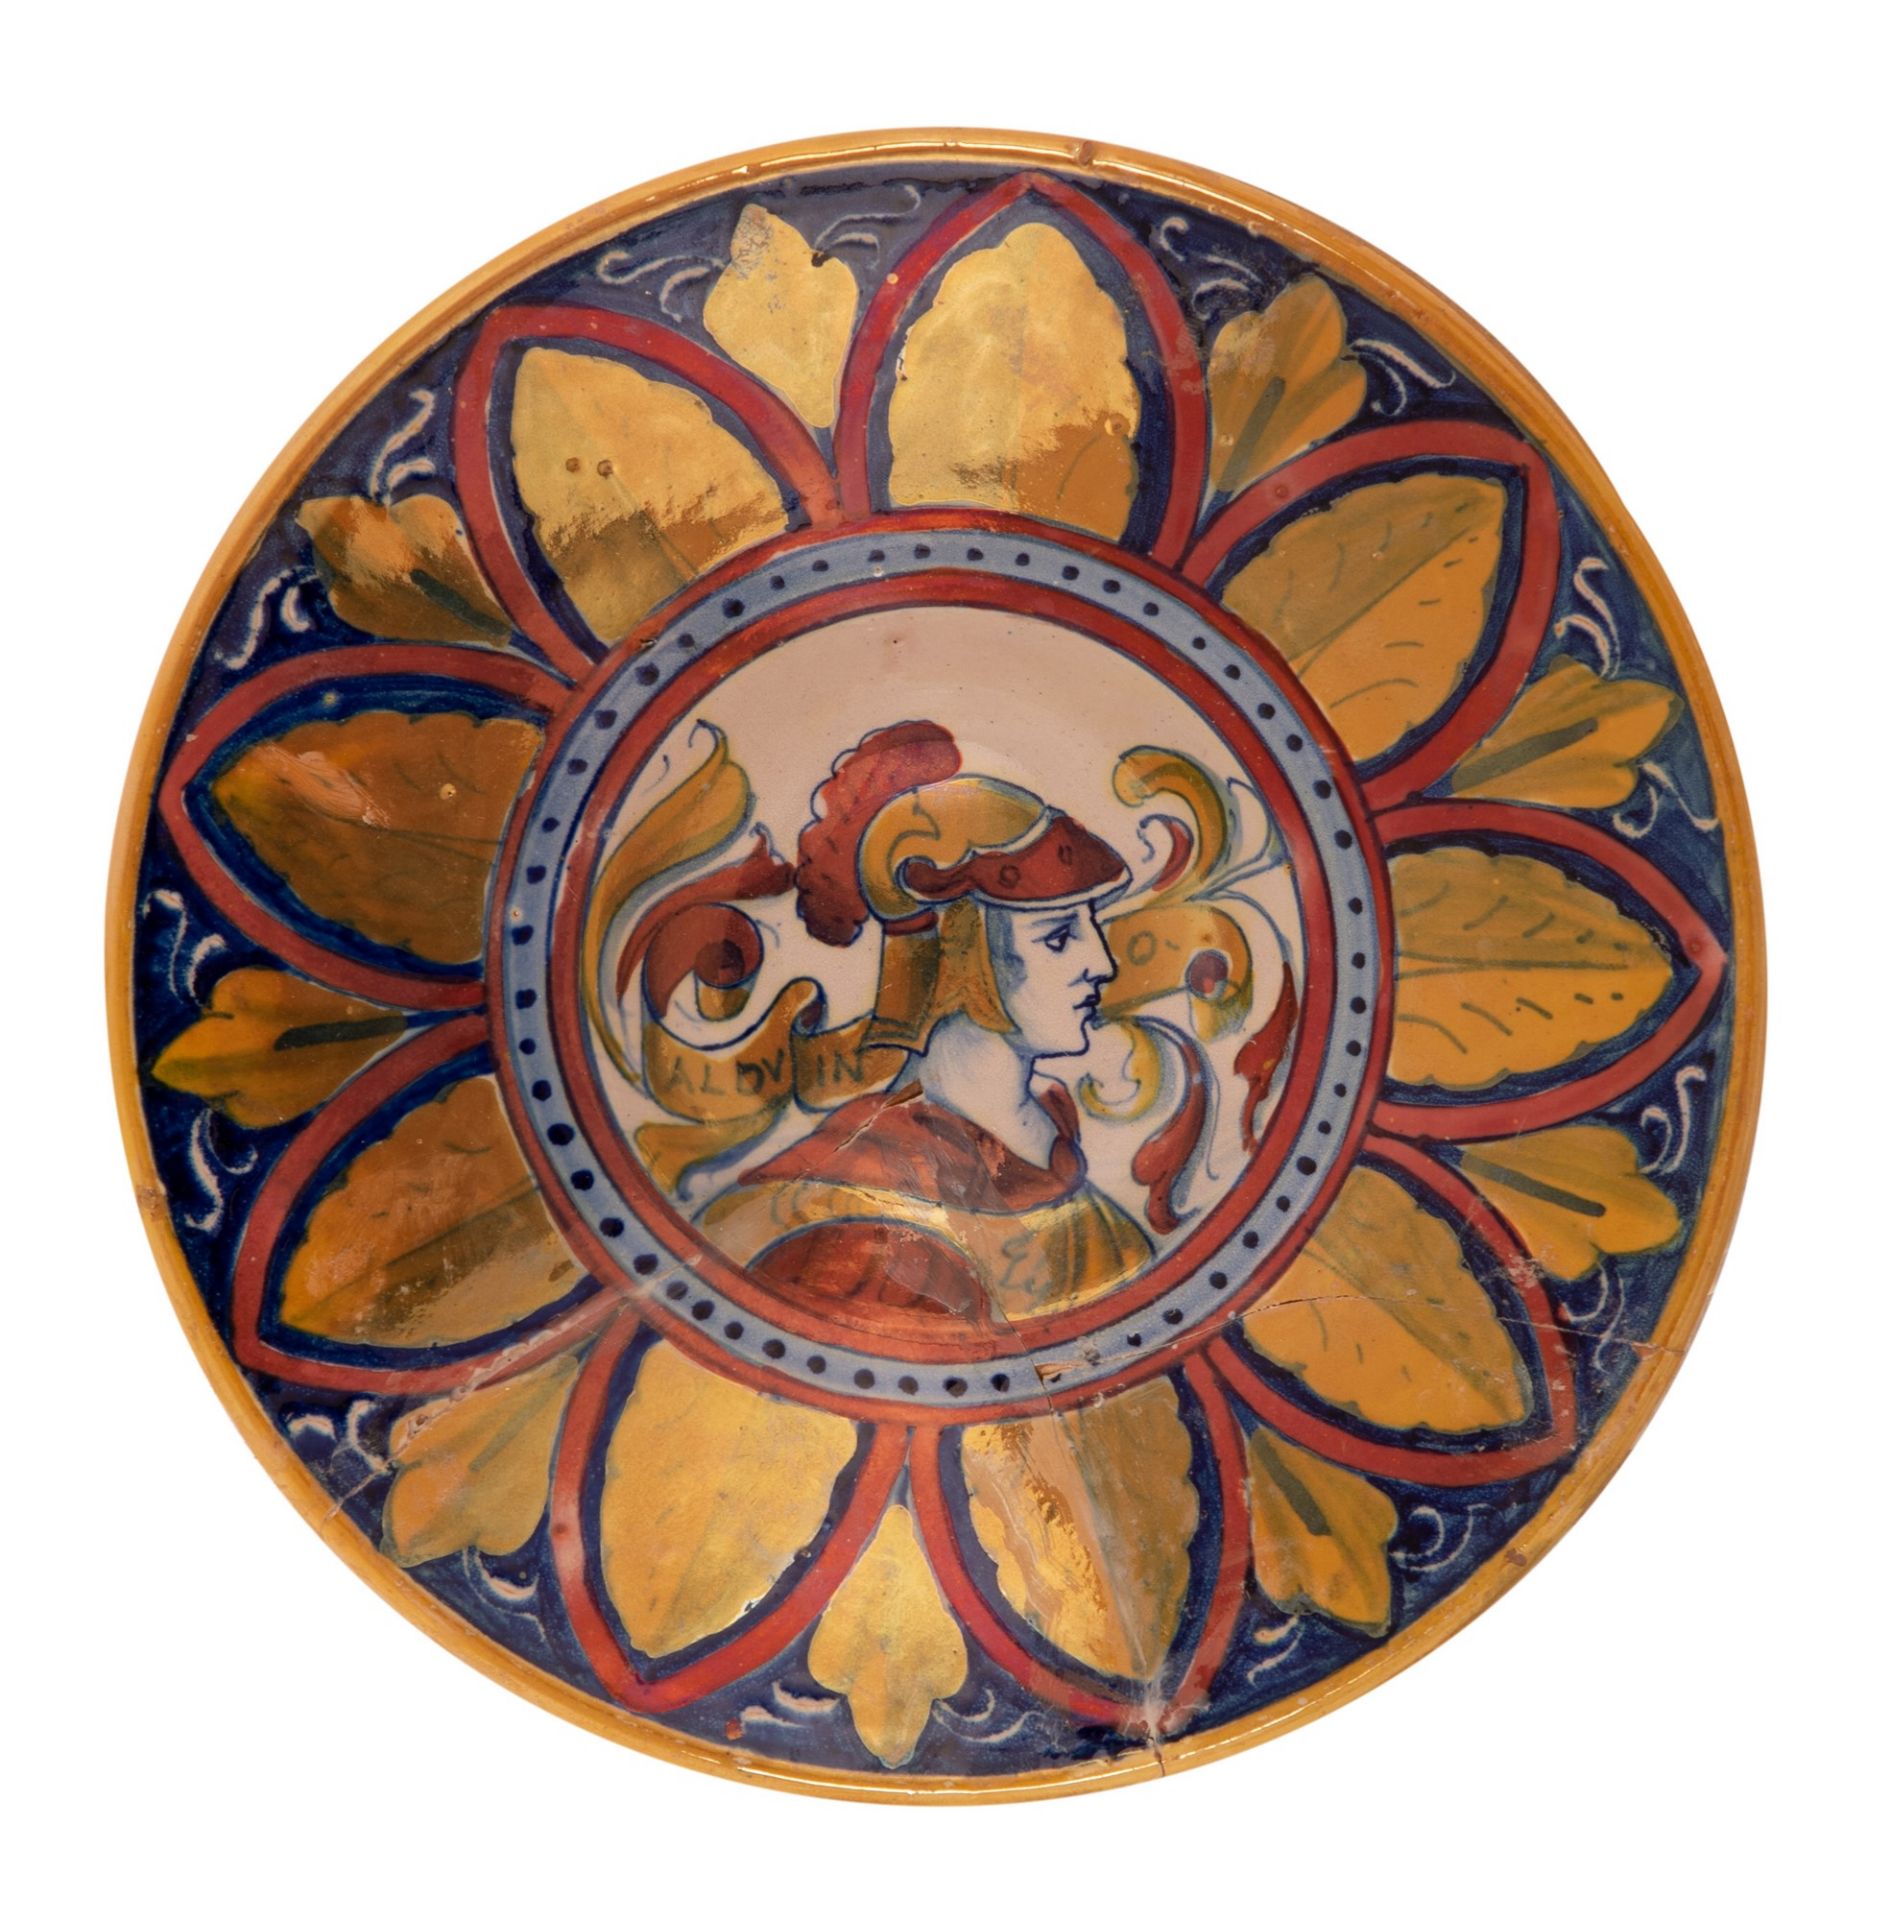  4 piatti in maiolica a lustro Gualdo Tadino raffigurante imperatori  - Bild 9 aus 10